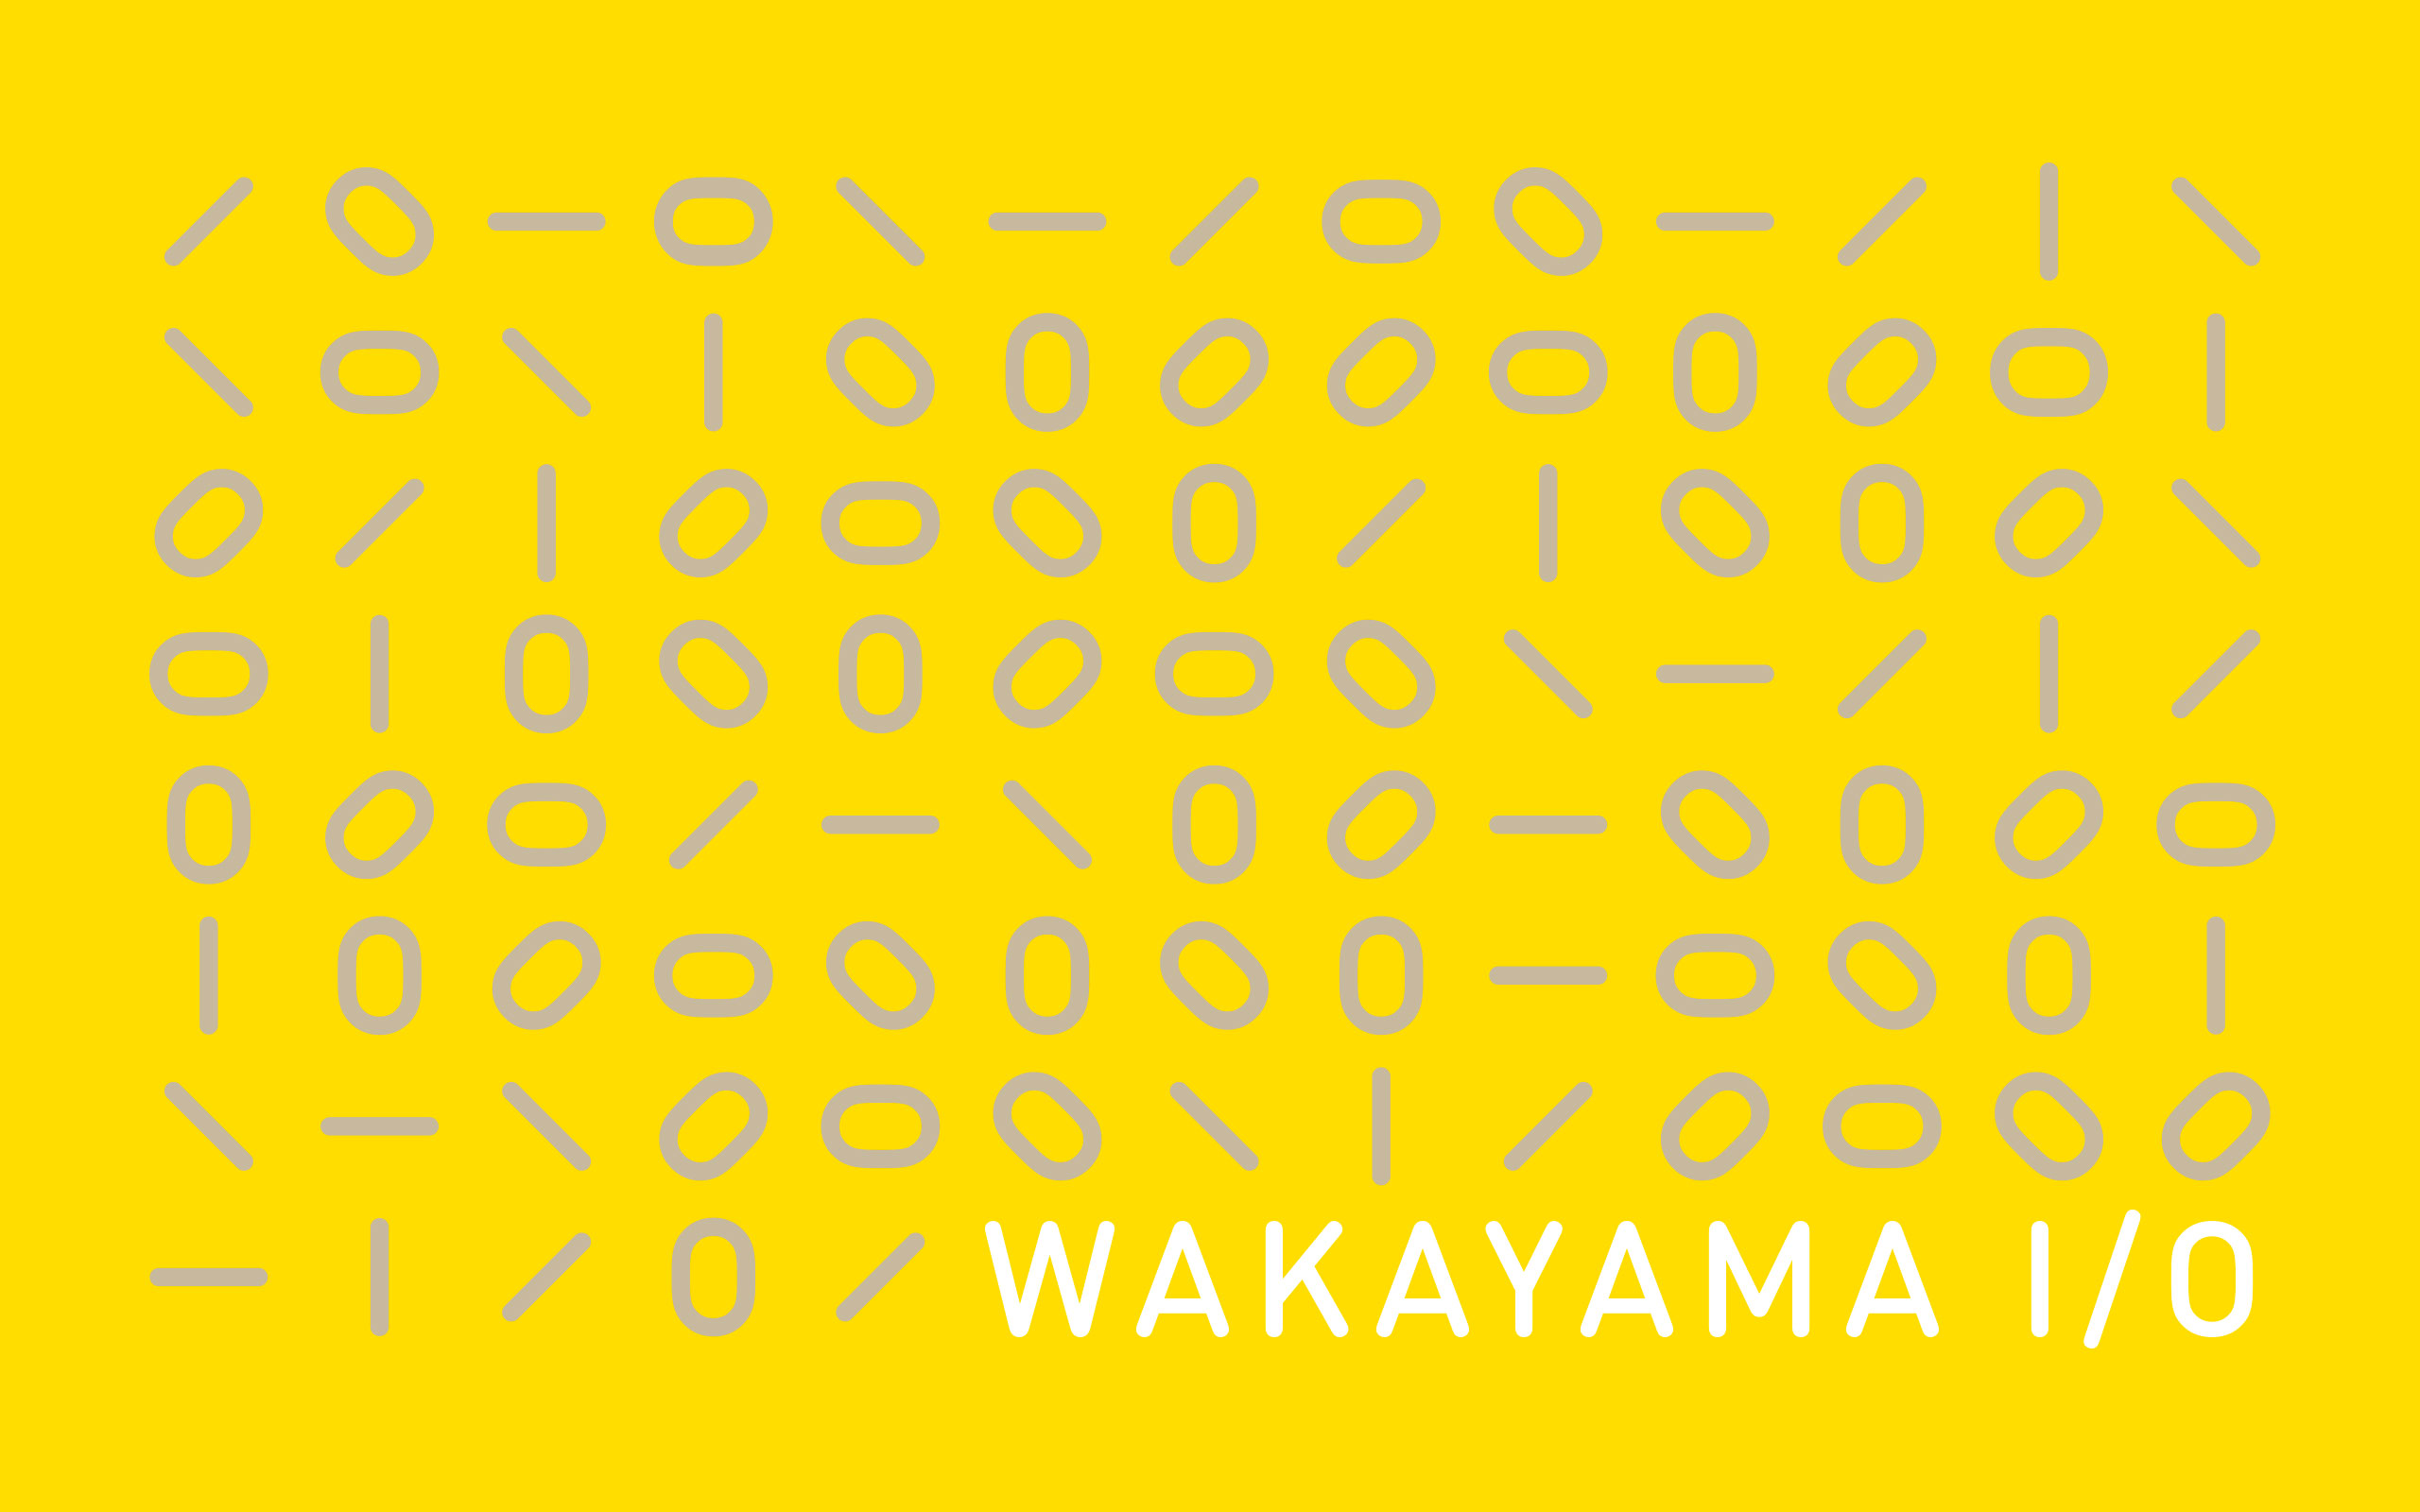 Wakayama I/O